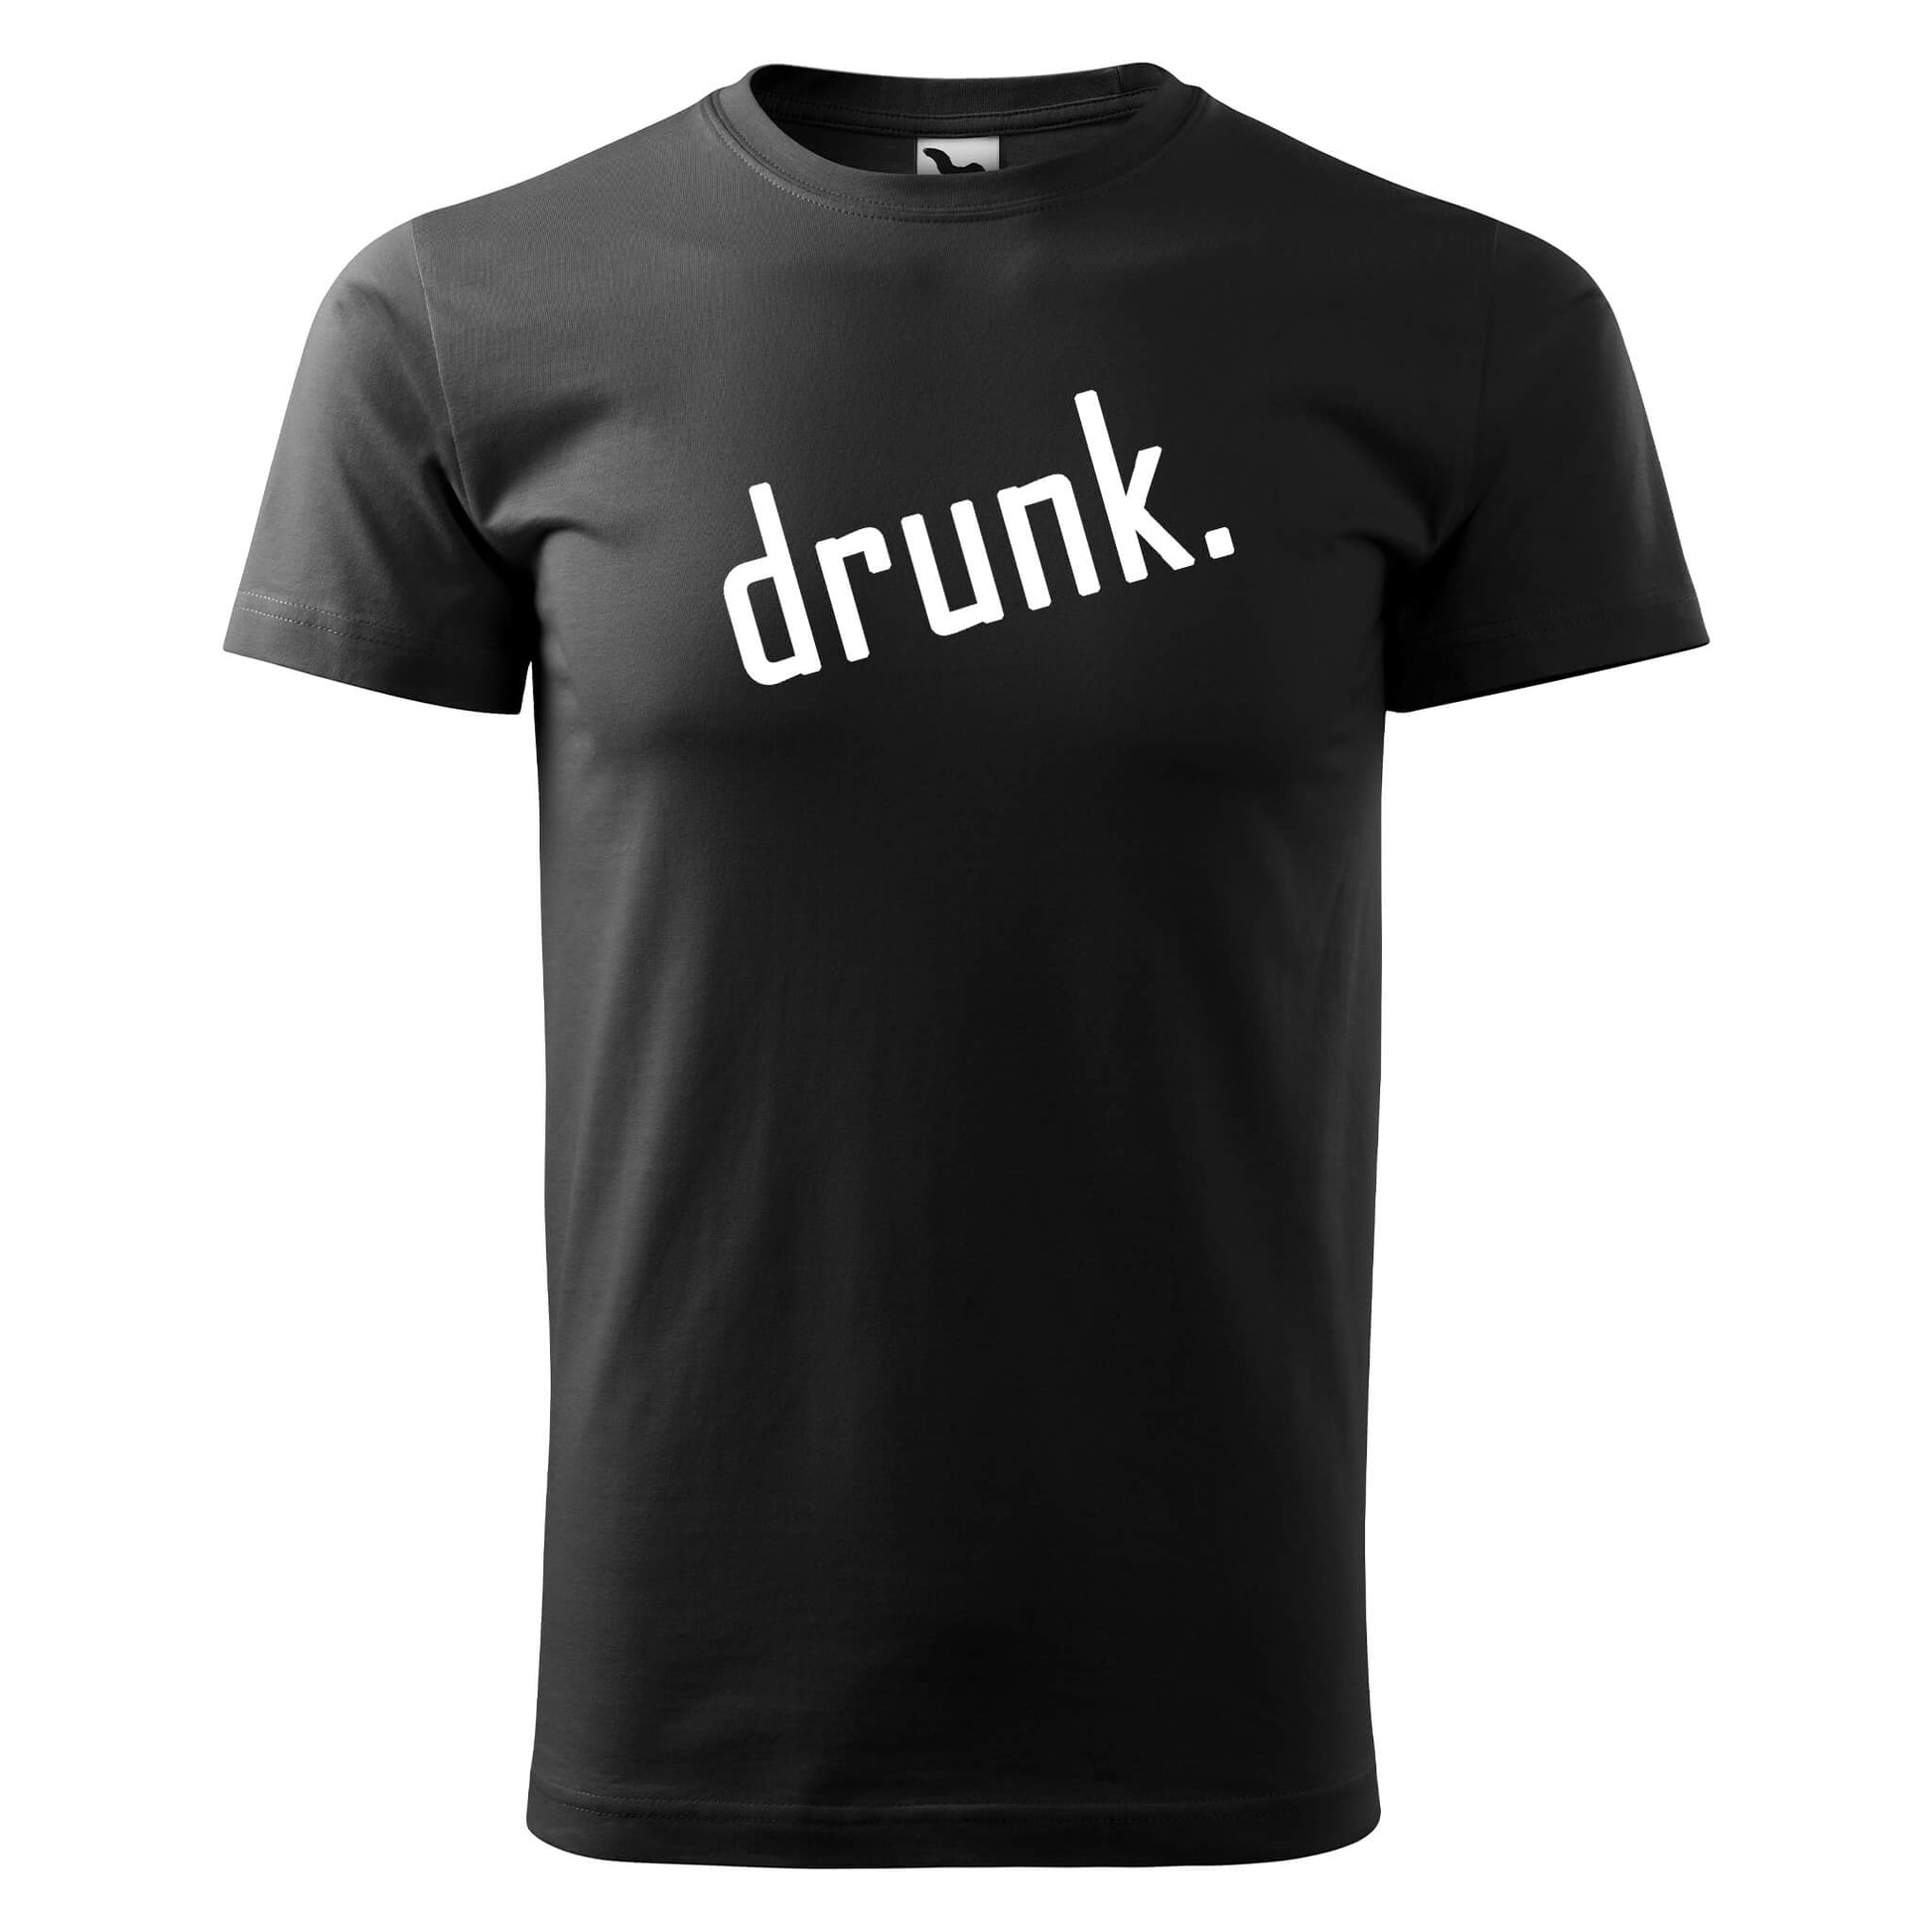 T-shirt - drunk. - rvdesignprint